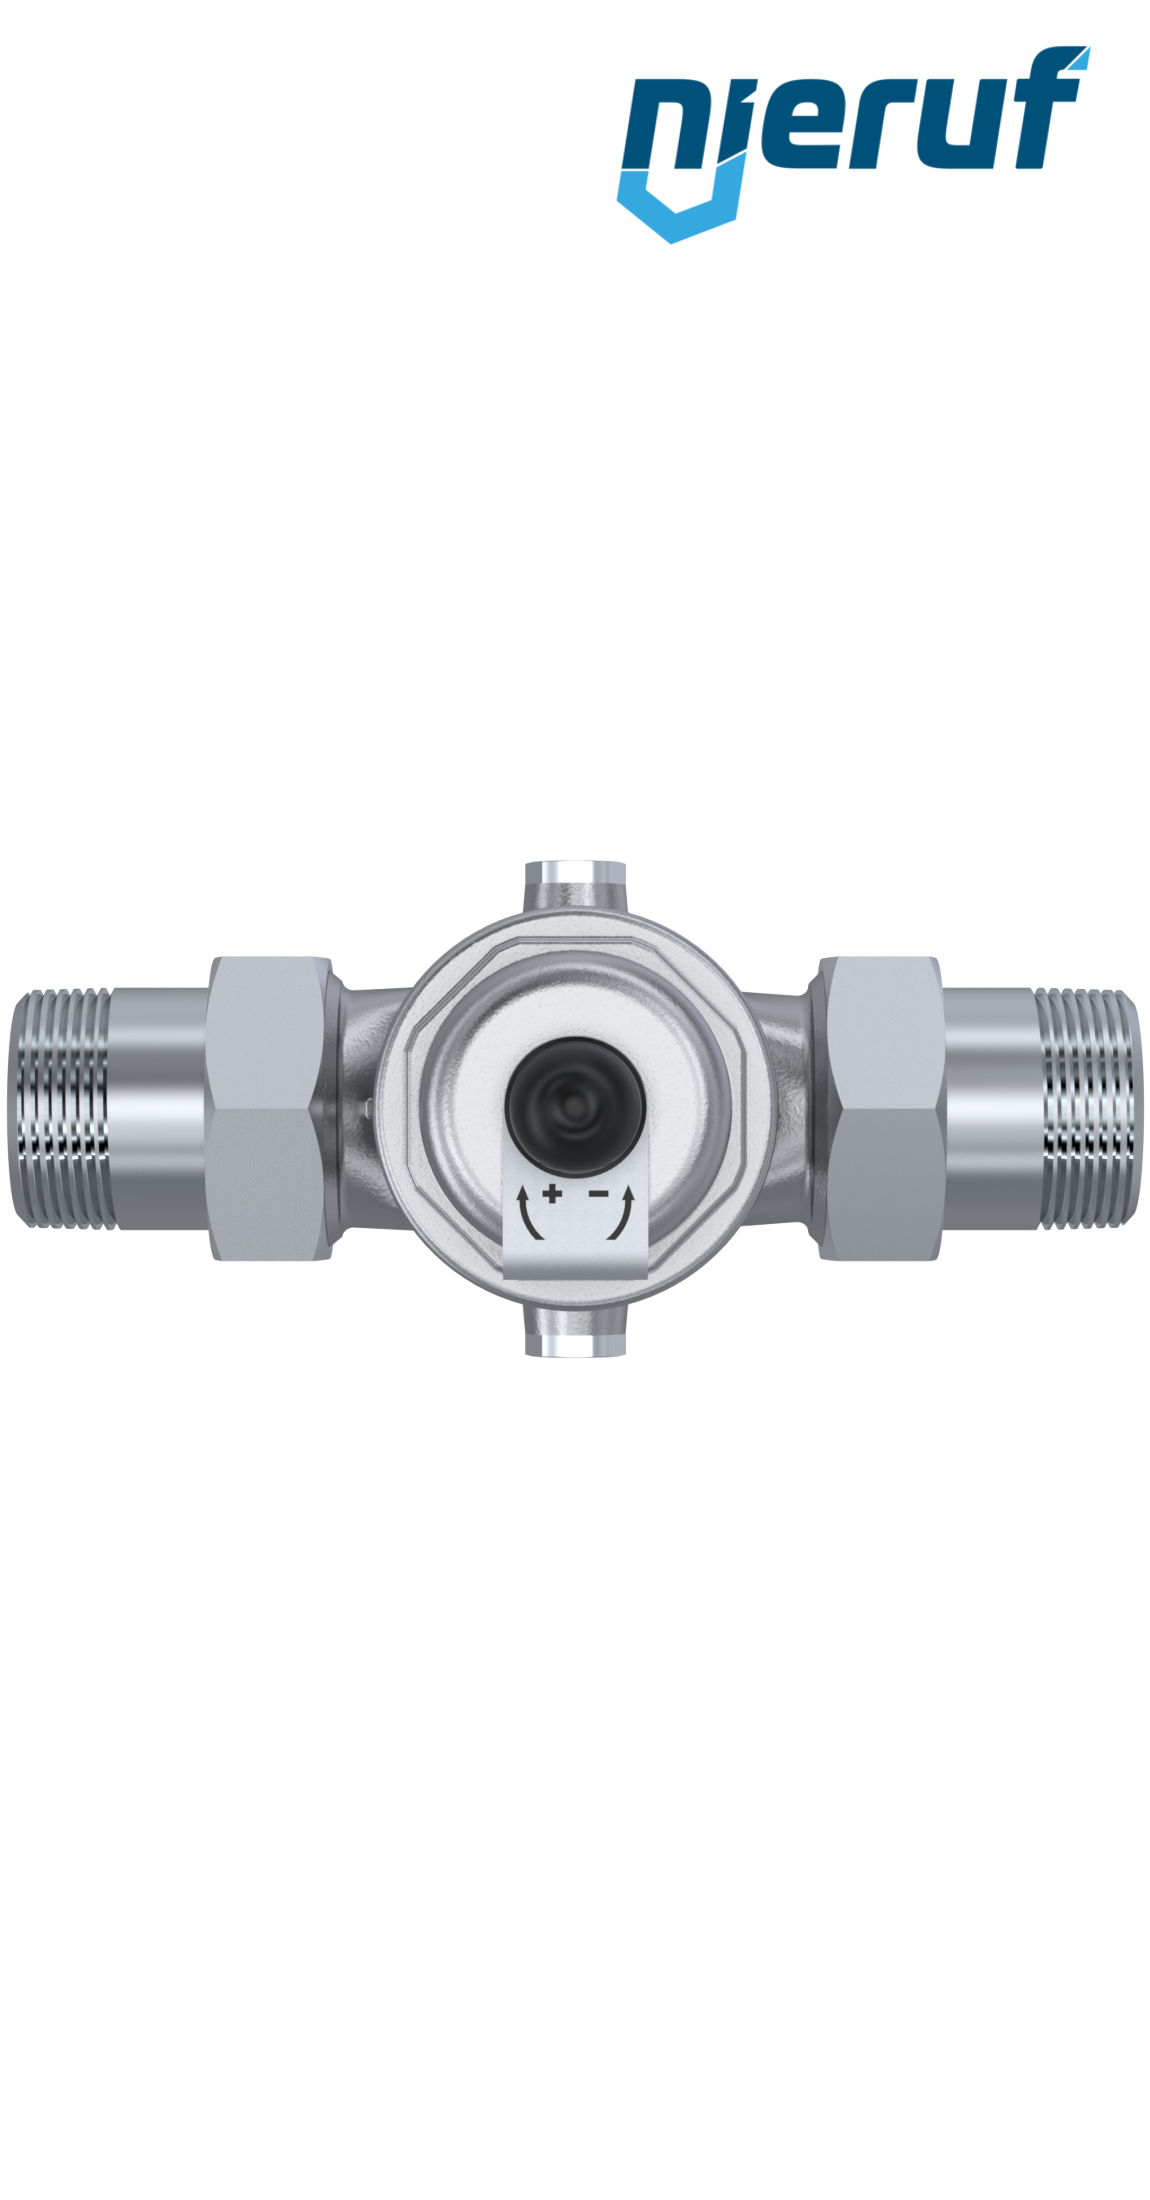 pressure reducing valve 2" inch male thread DM04 stainless steel FKM 0.5 - 2.0 bar